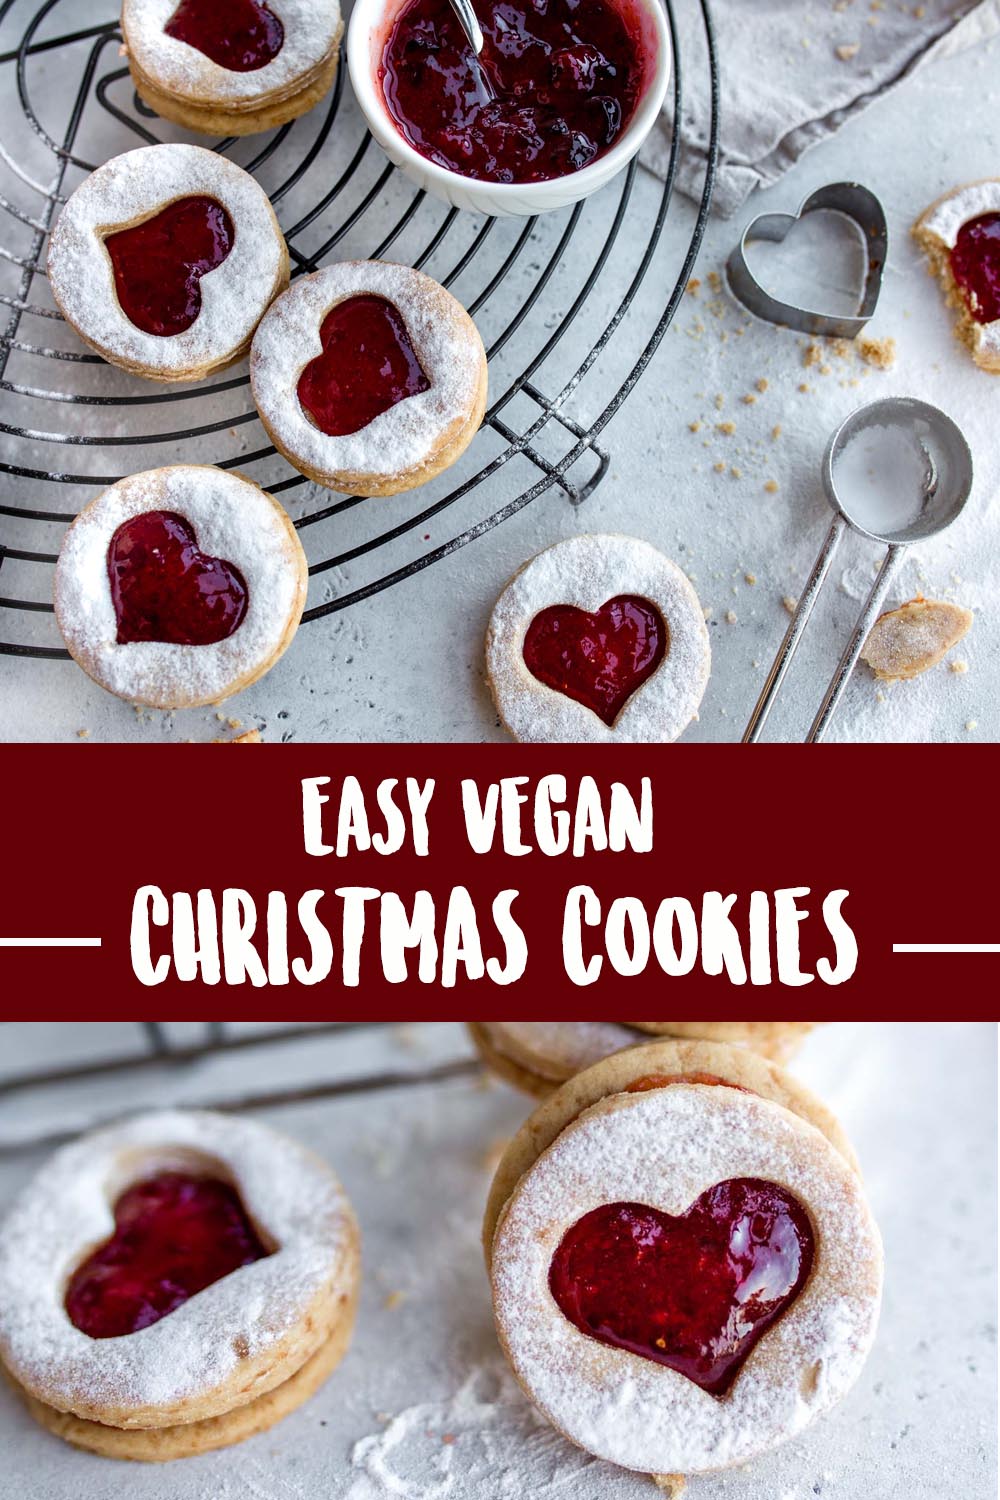 Easy Vegan Christmas Cookies